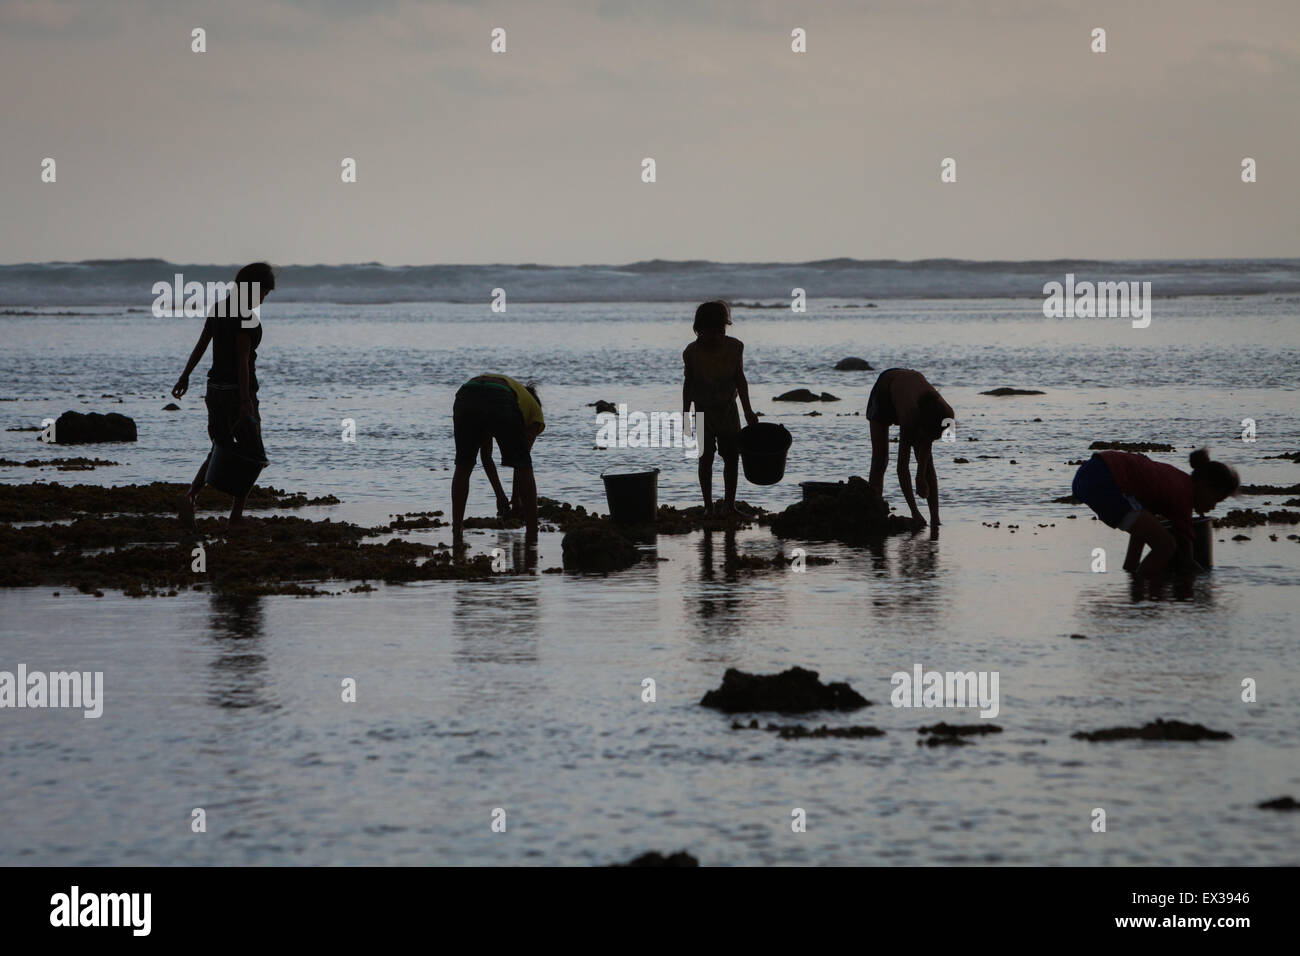 Les jeunes femmes ont silhoueté car elles collectent des produits de la mer à marée basse, une source alternative de nourriture saisonnière à l'île de Sumba, en Indonésie. Banque D'Images